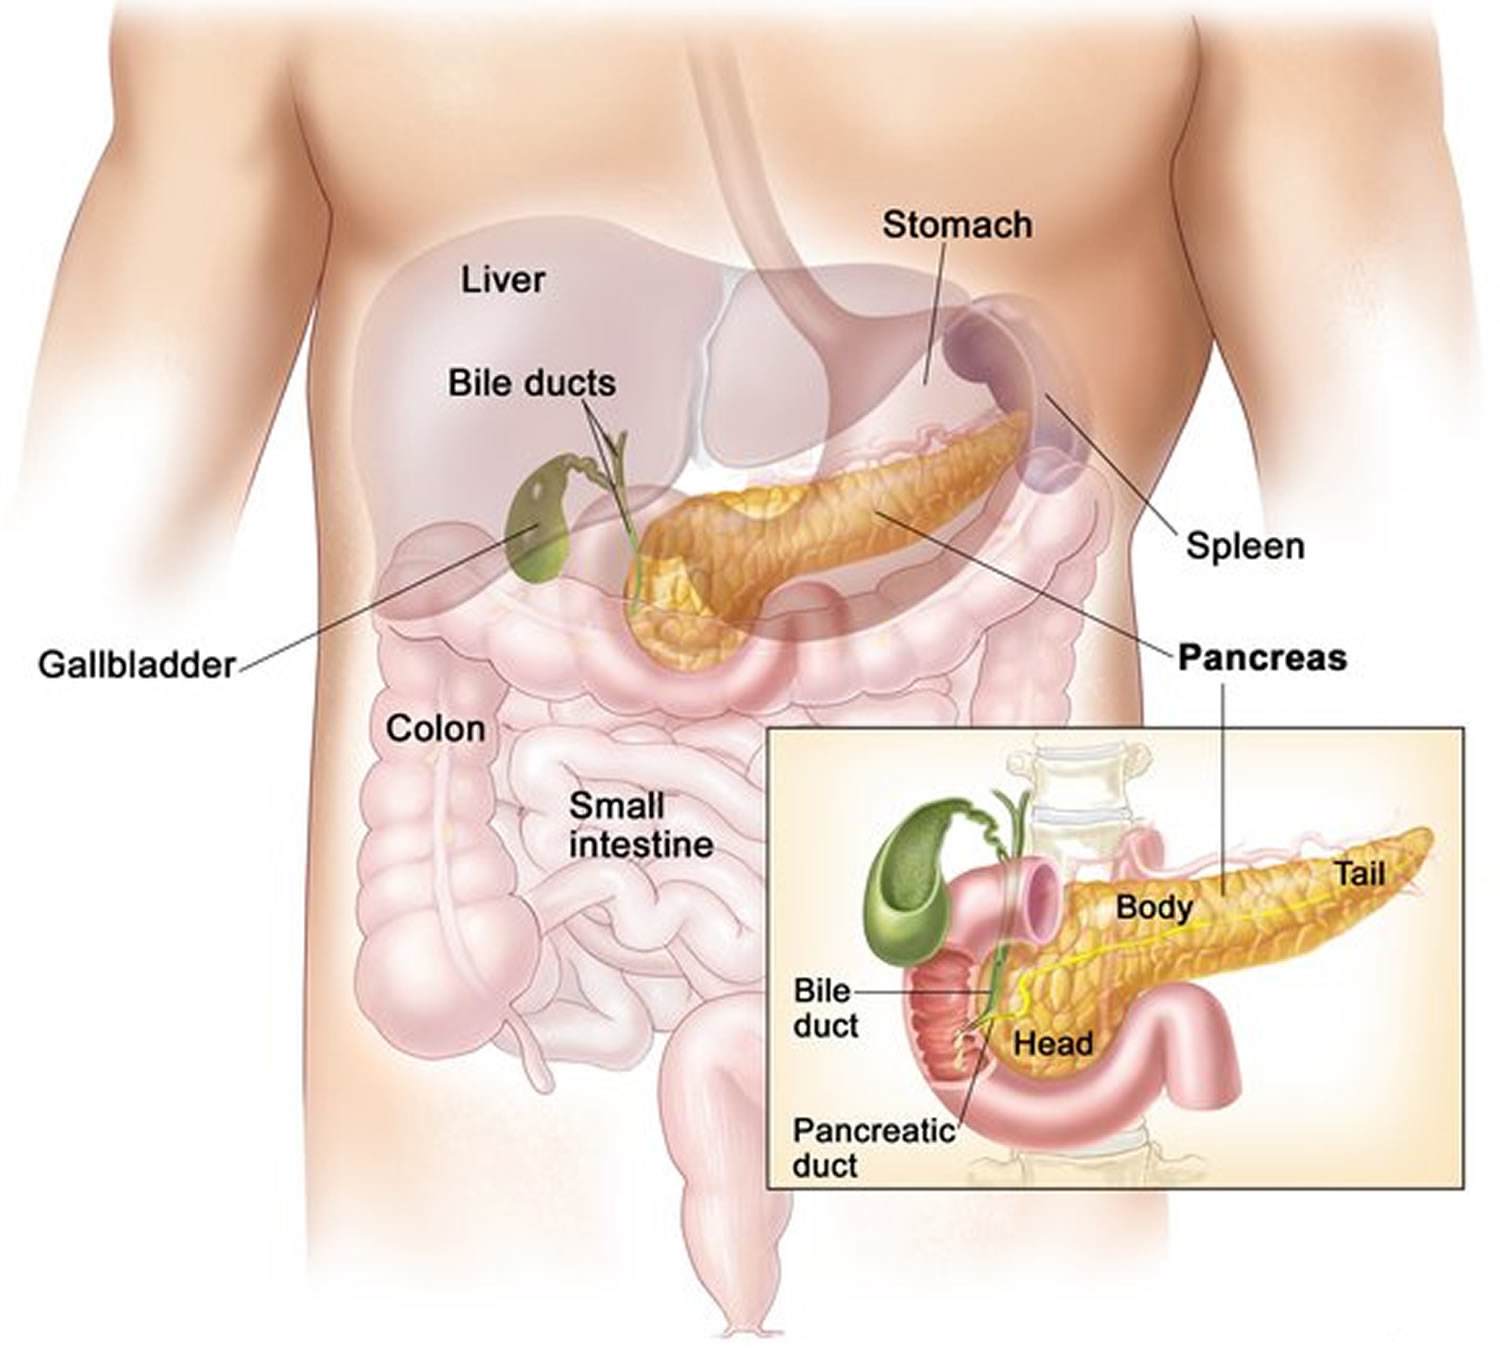 Pancreas location